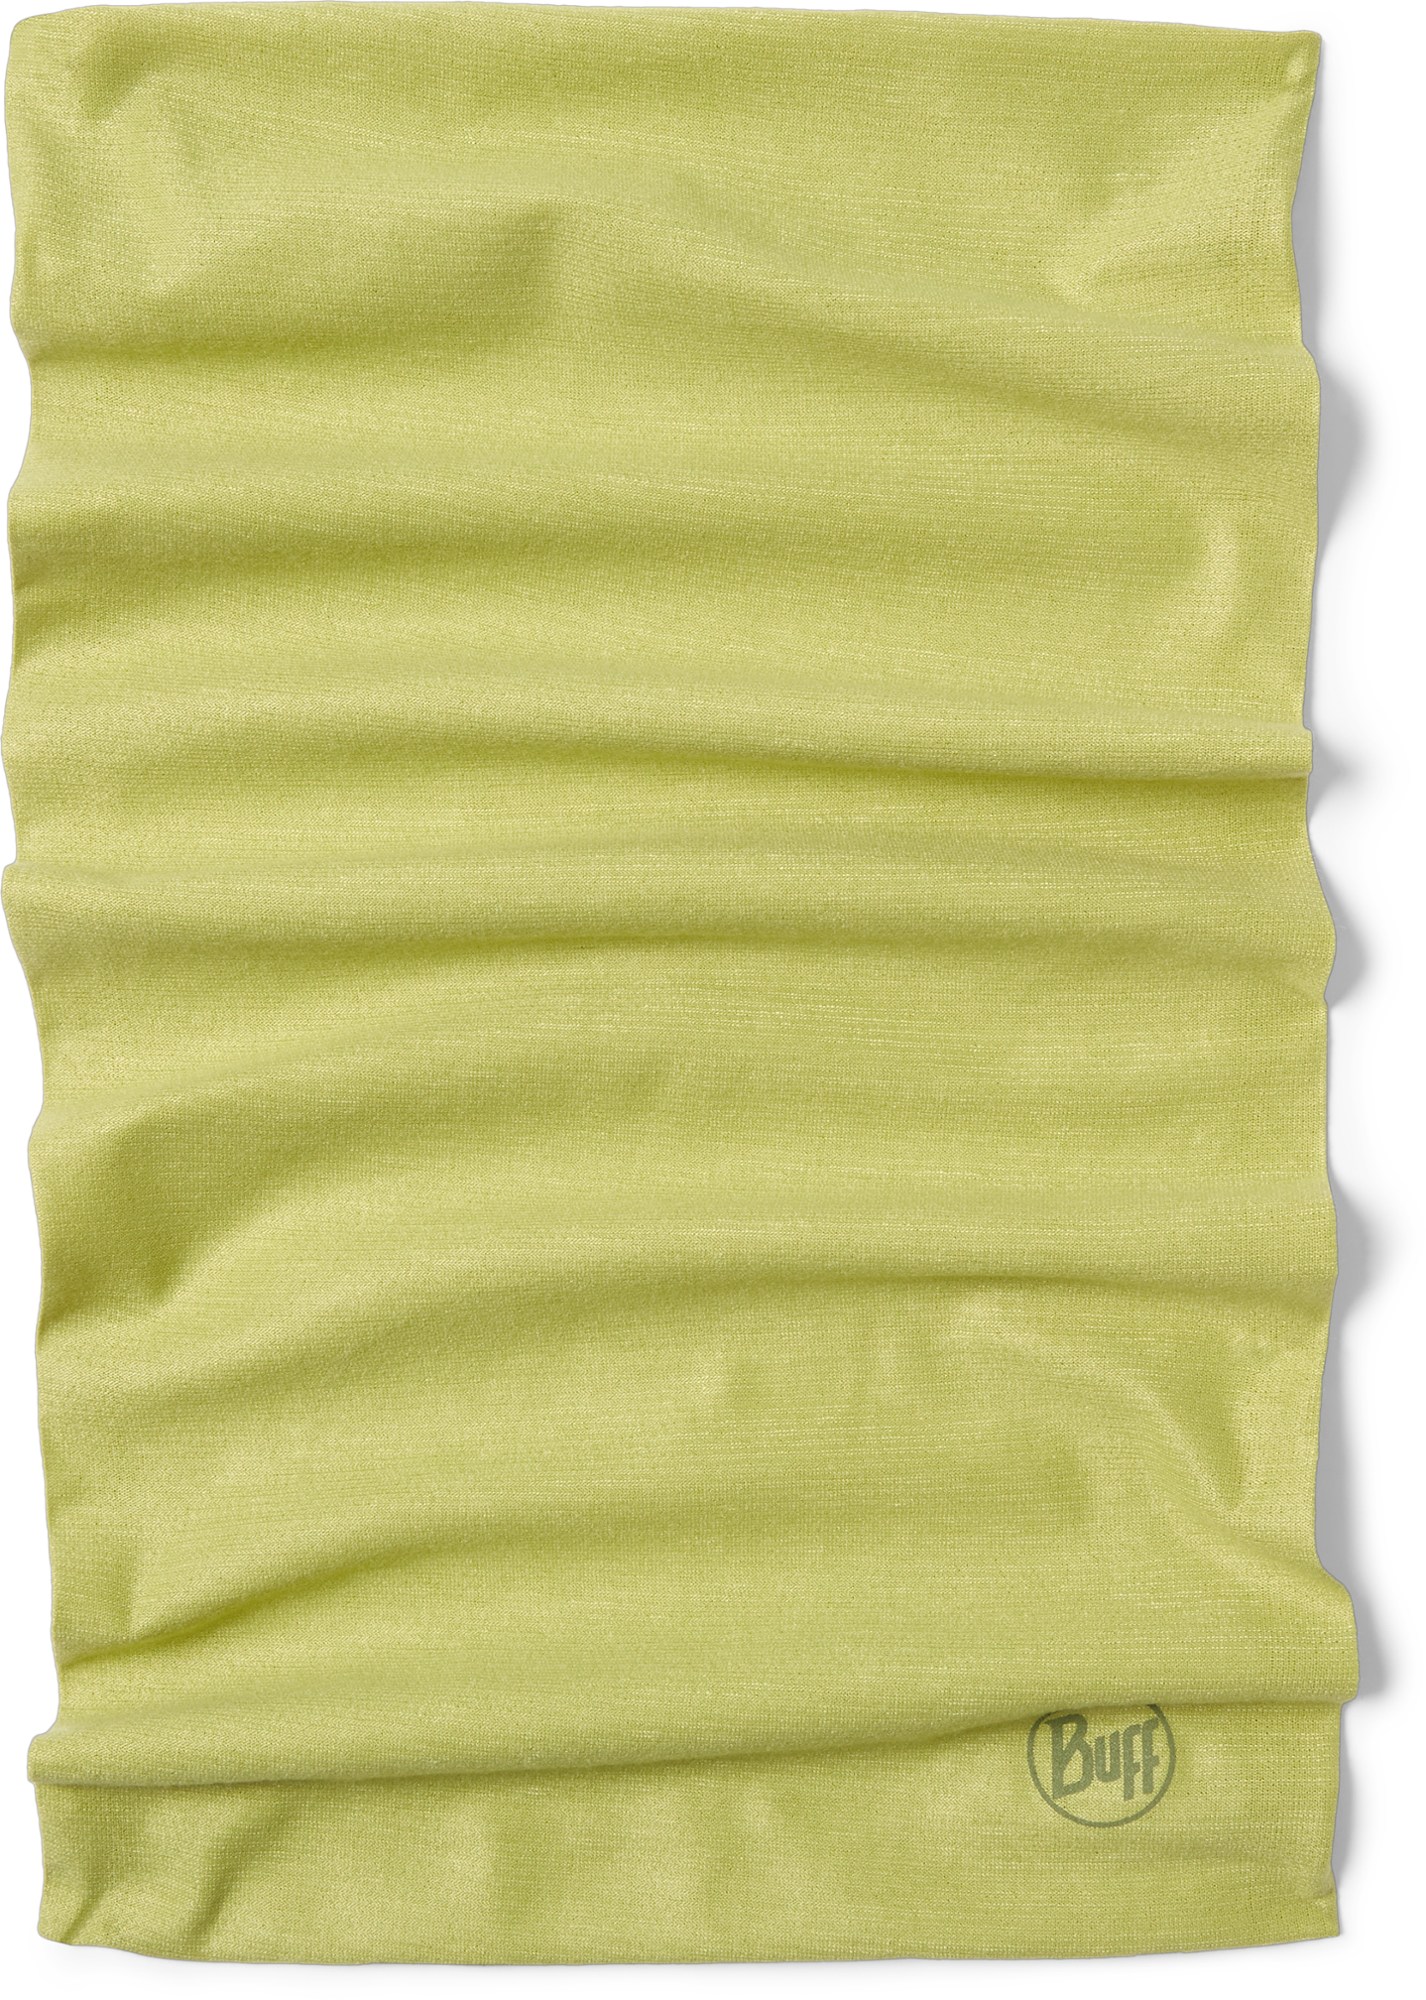 цена Многофункциональный галстук CoolNet UV+ с защитой от насекомых Buff, зеленый